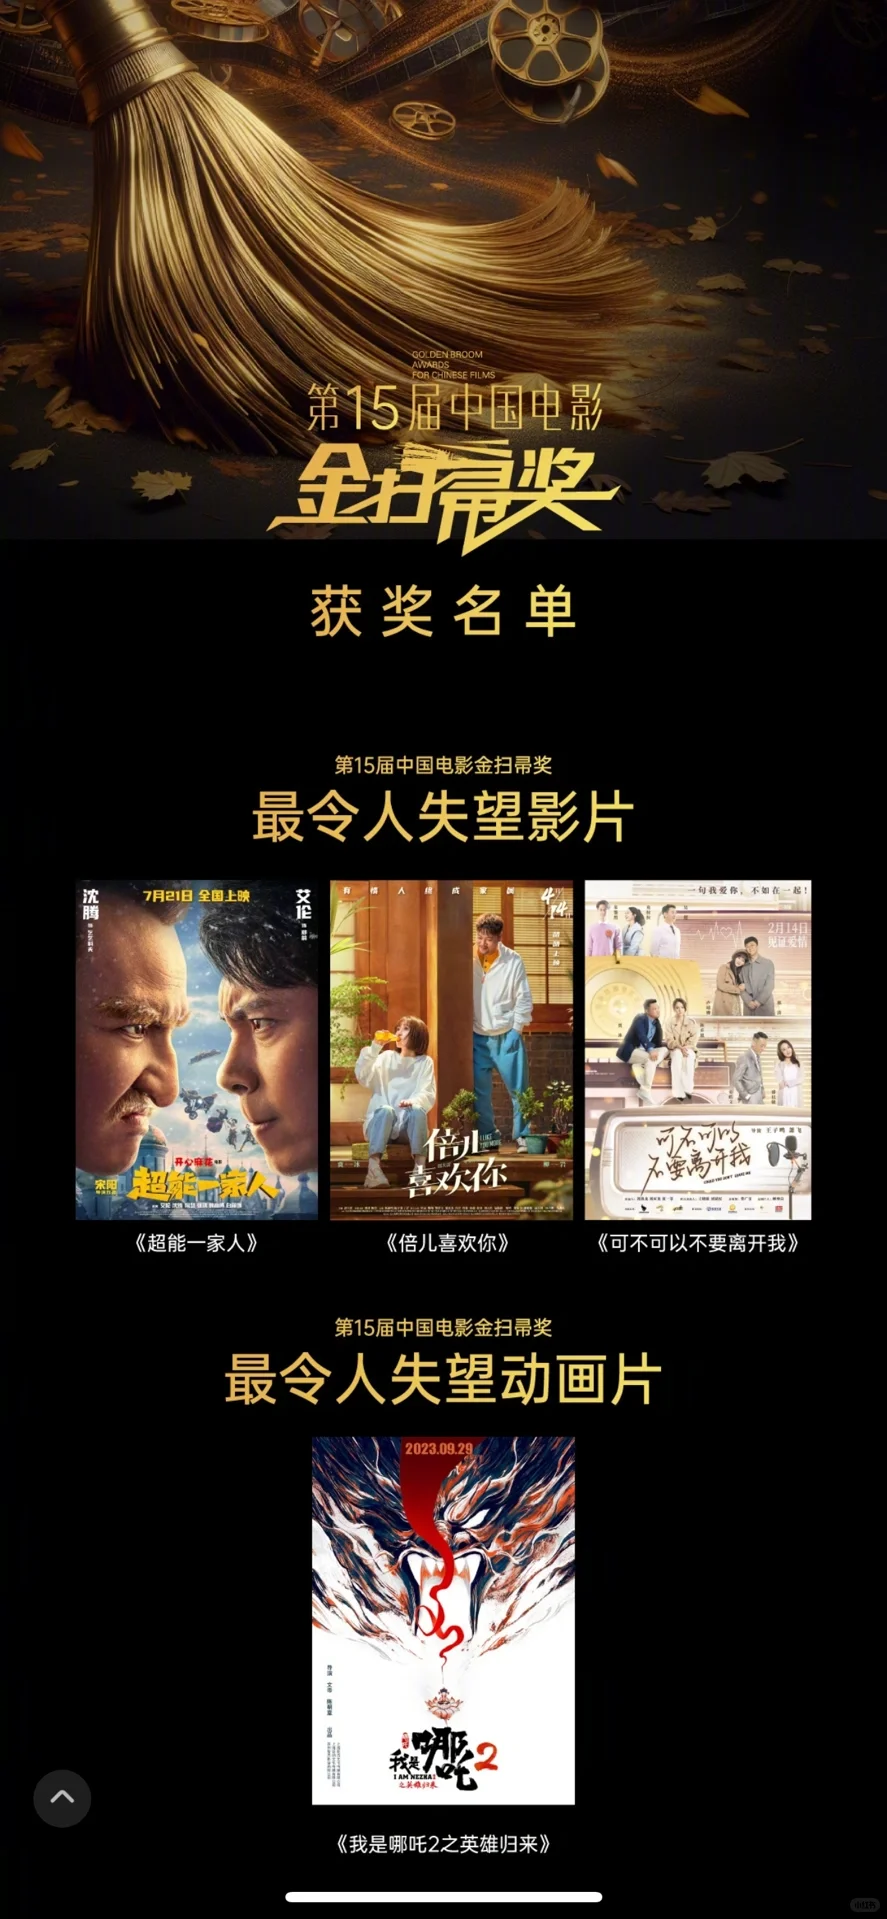 中国电影金扫帚奖，多项最令人失望实至名归